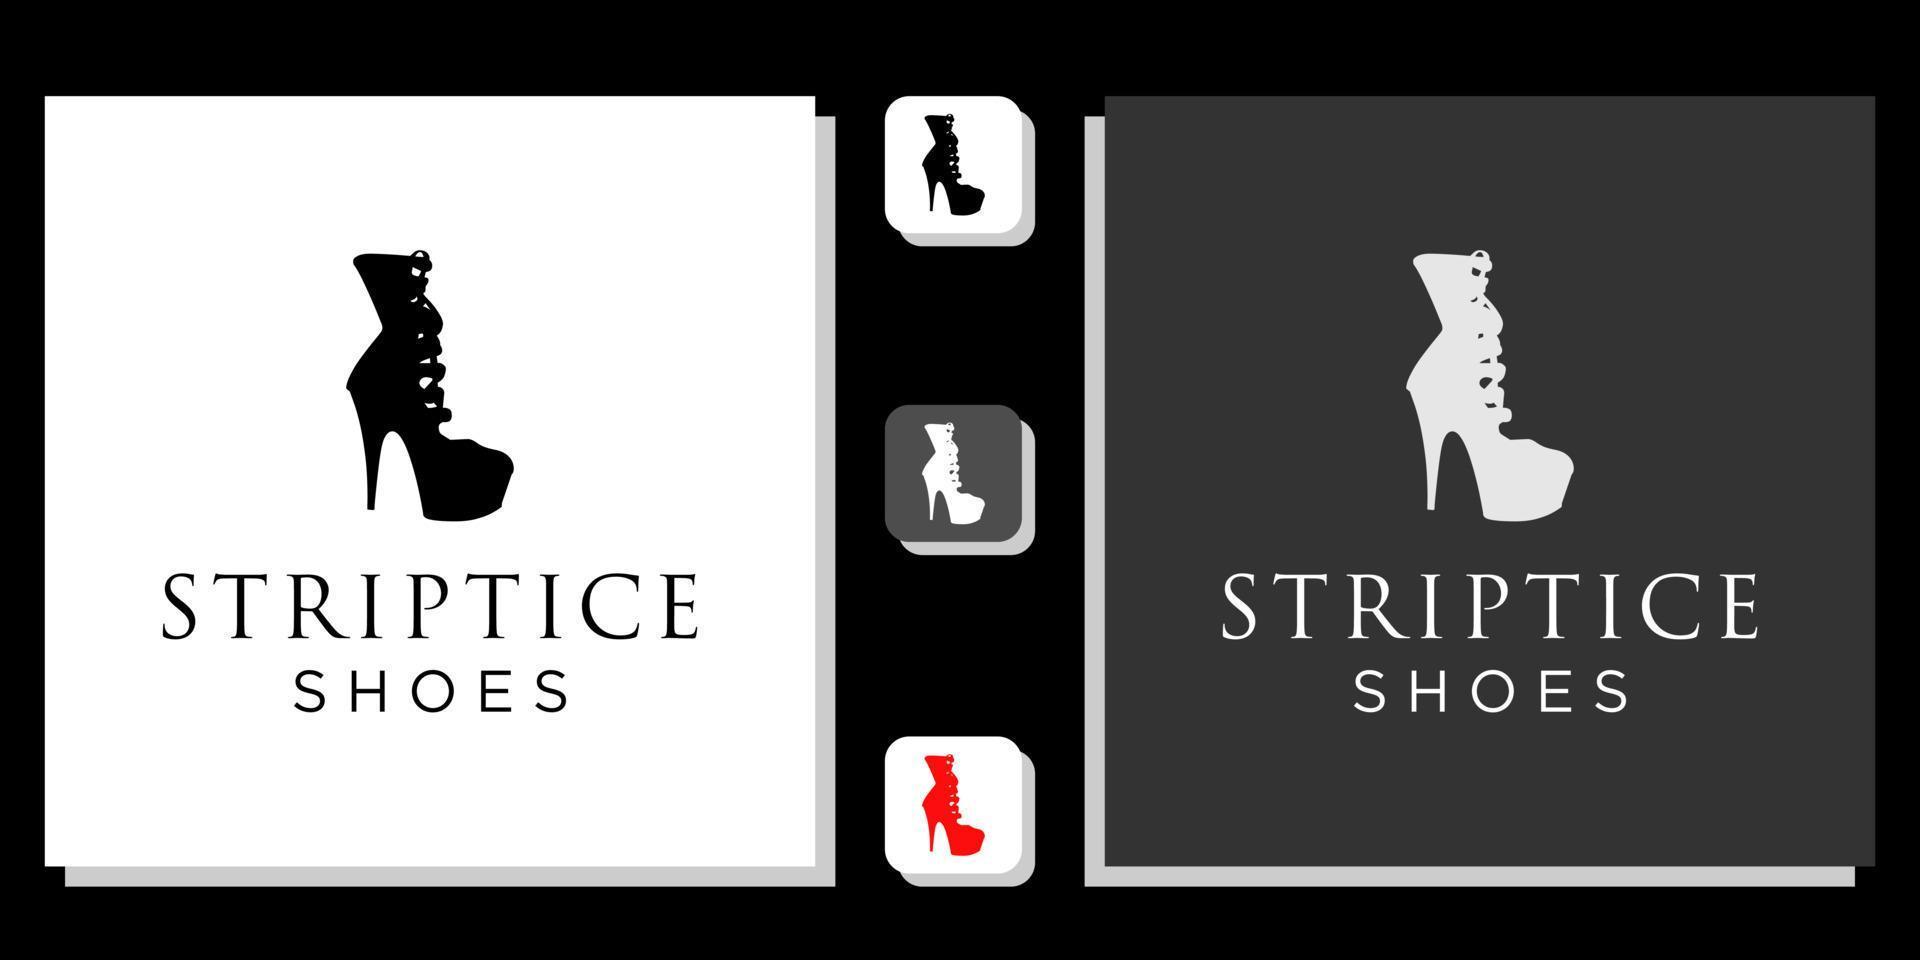 striptice zapatos símbolo moda chica tienda tienda con plantilla de aplicación vector